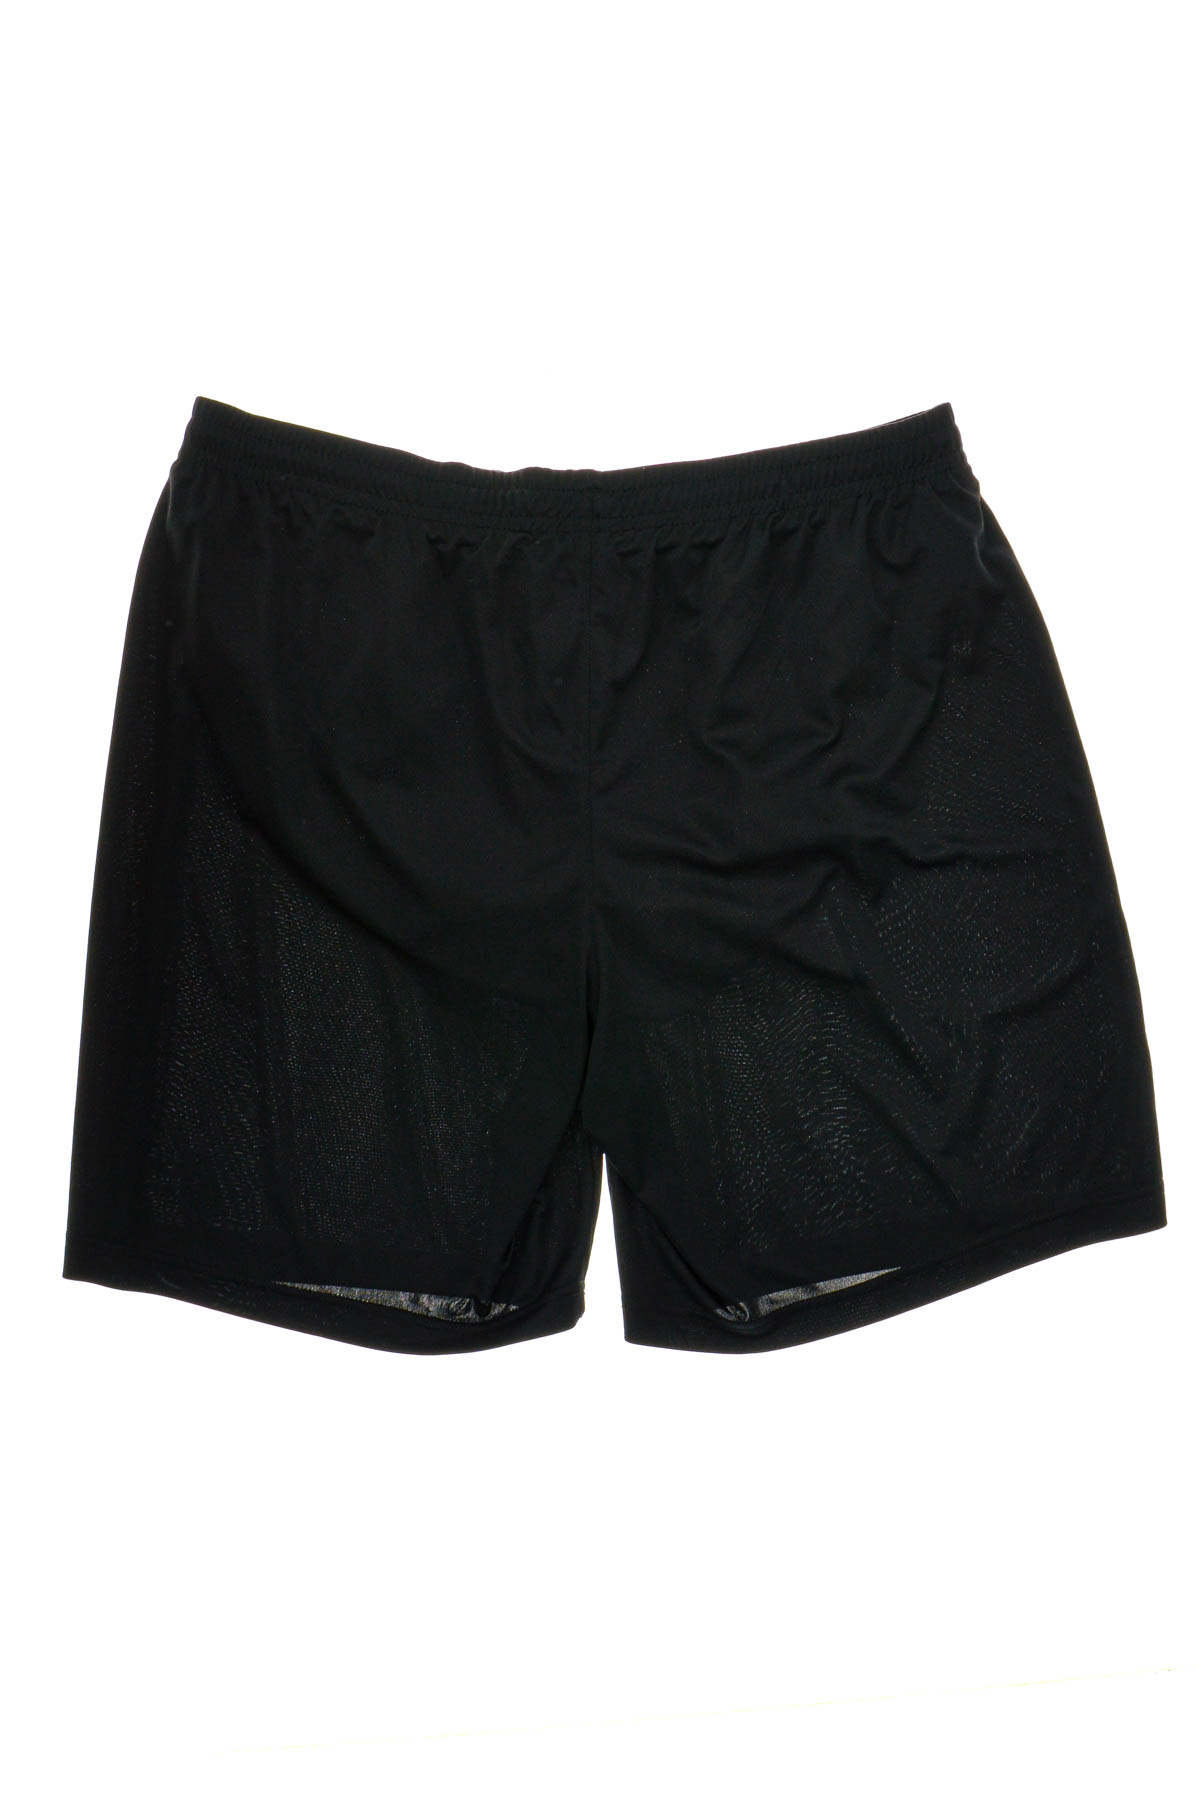 Men's shorts - Pro Touch - 1